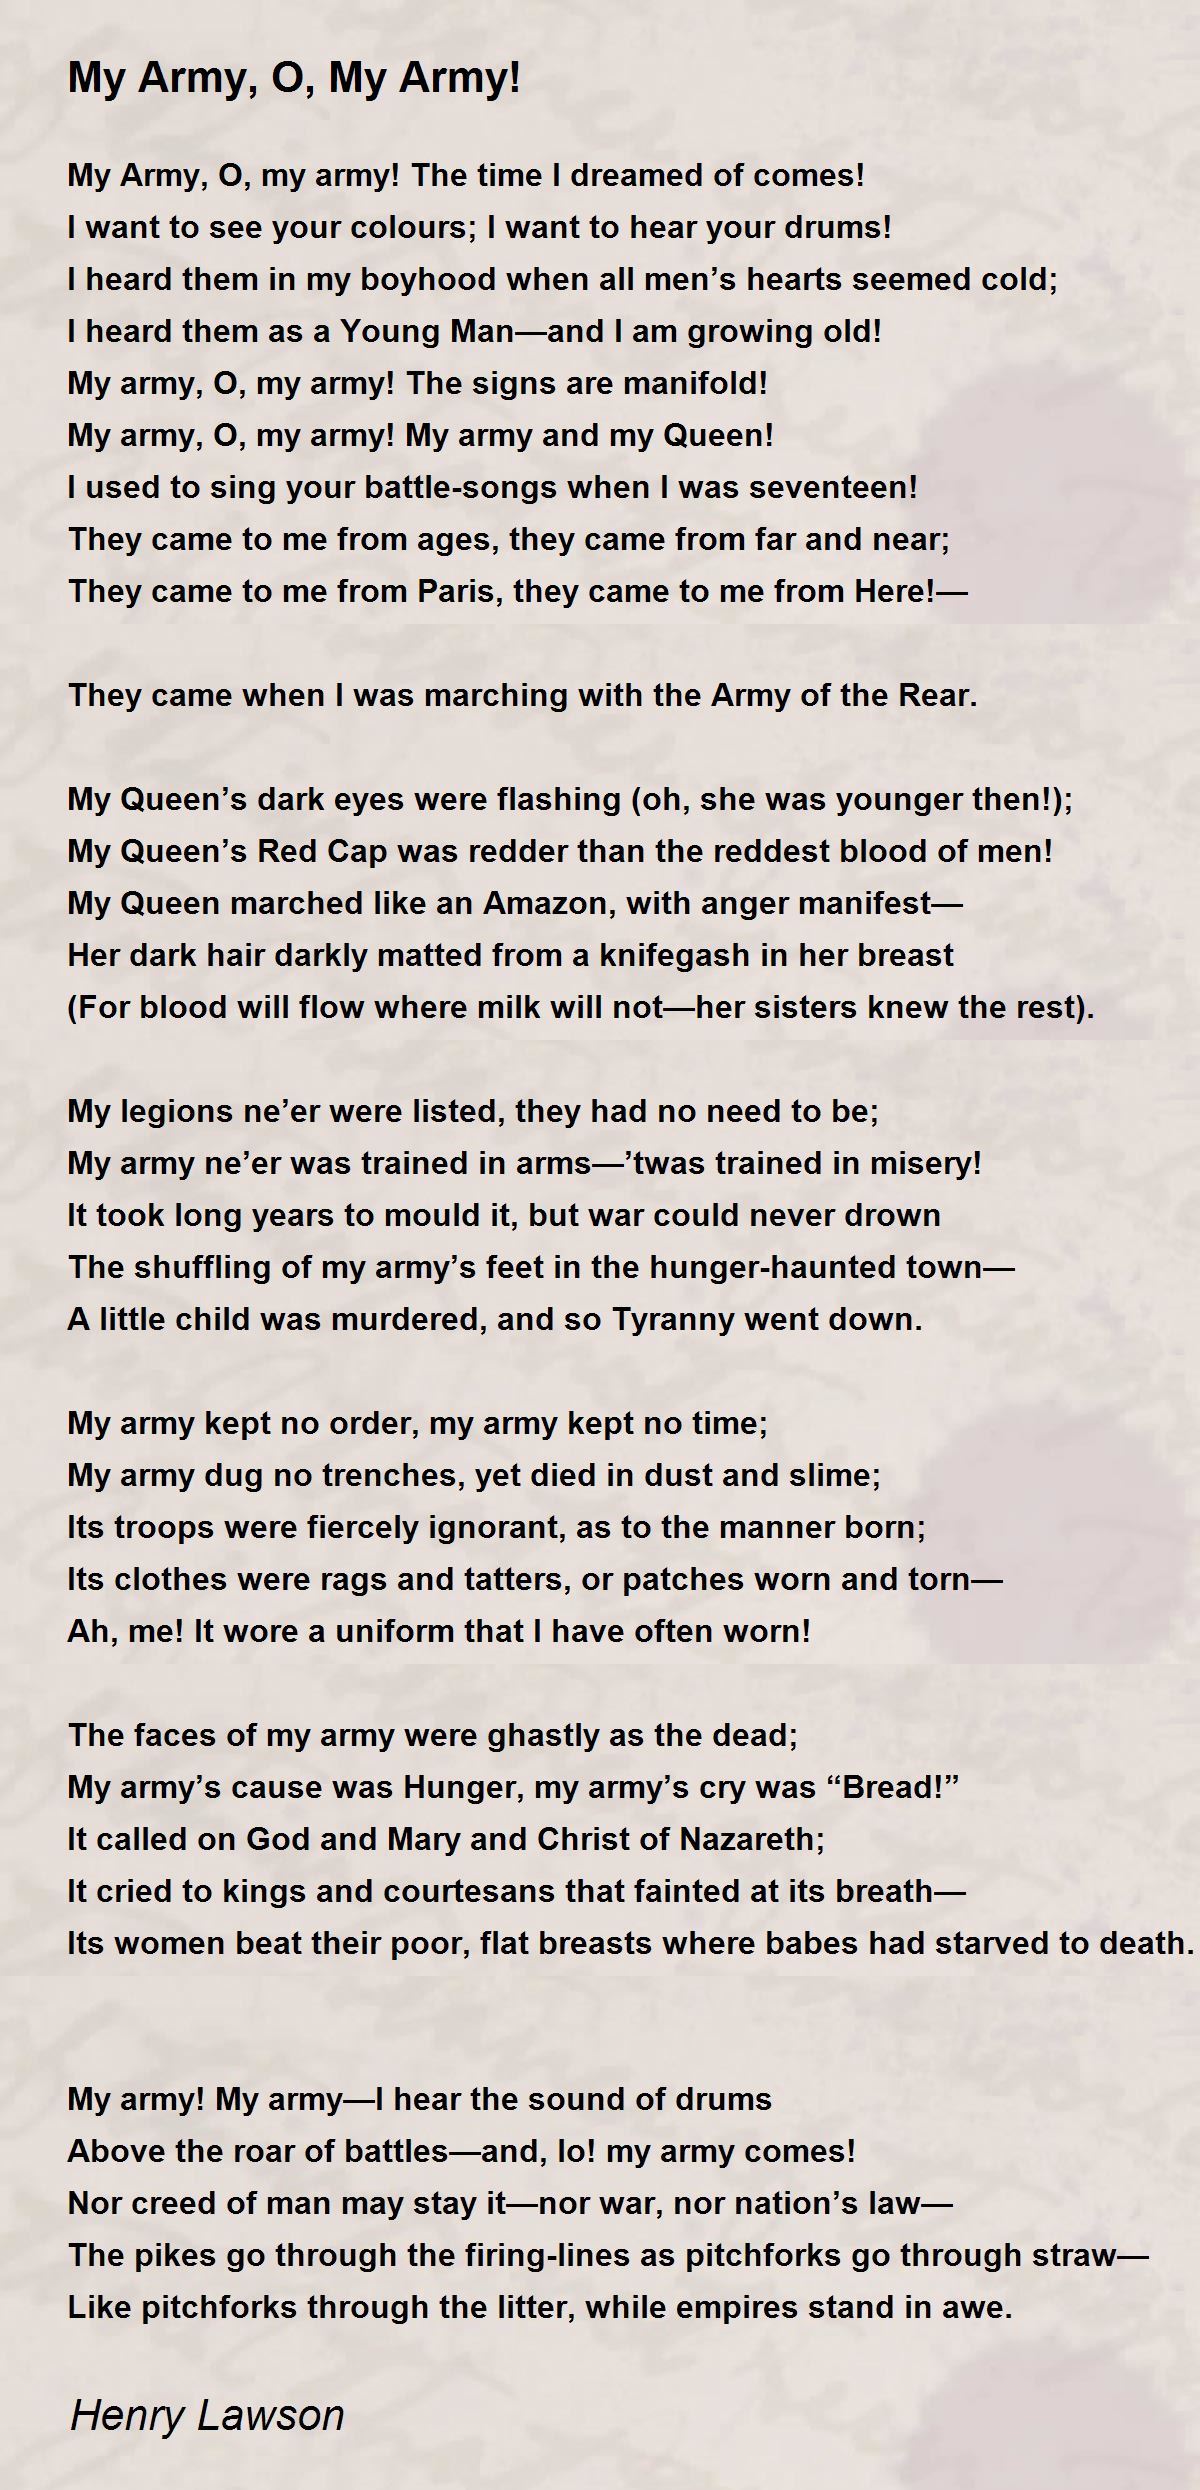 My Army, O, My Army! - My Army, O, My Army! Poem by Henry Lawson